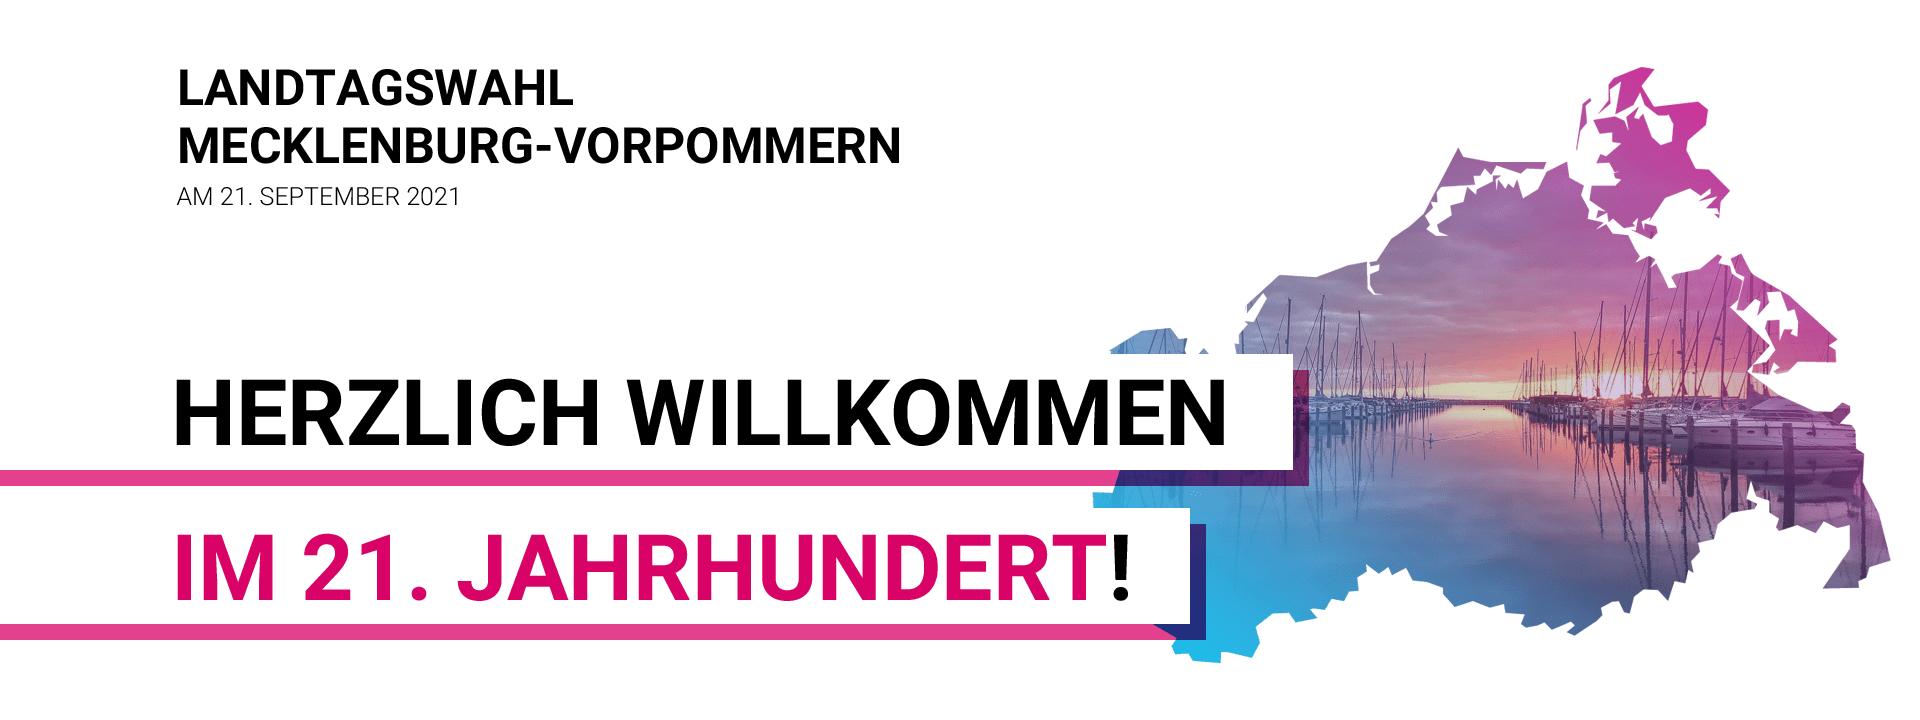 Landtagswahl Mecklenburg-Vorpommern am 21. September 2021 – Herzlich Willkommen im 21. Jahrhundert!